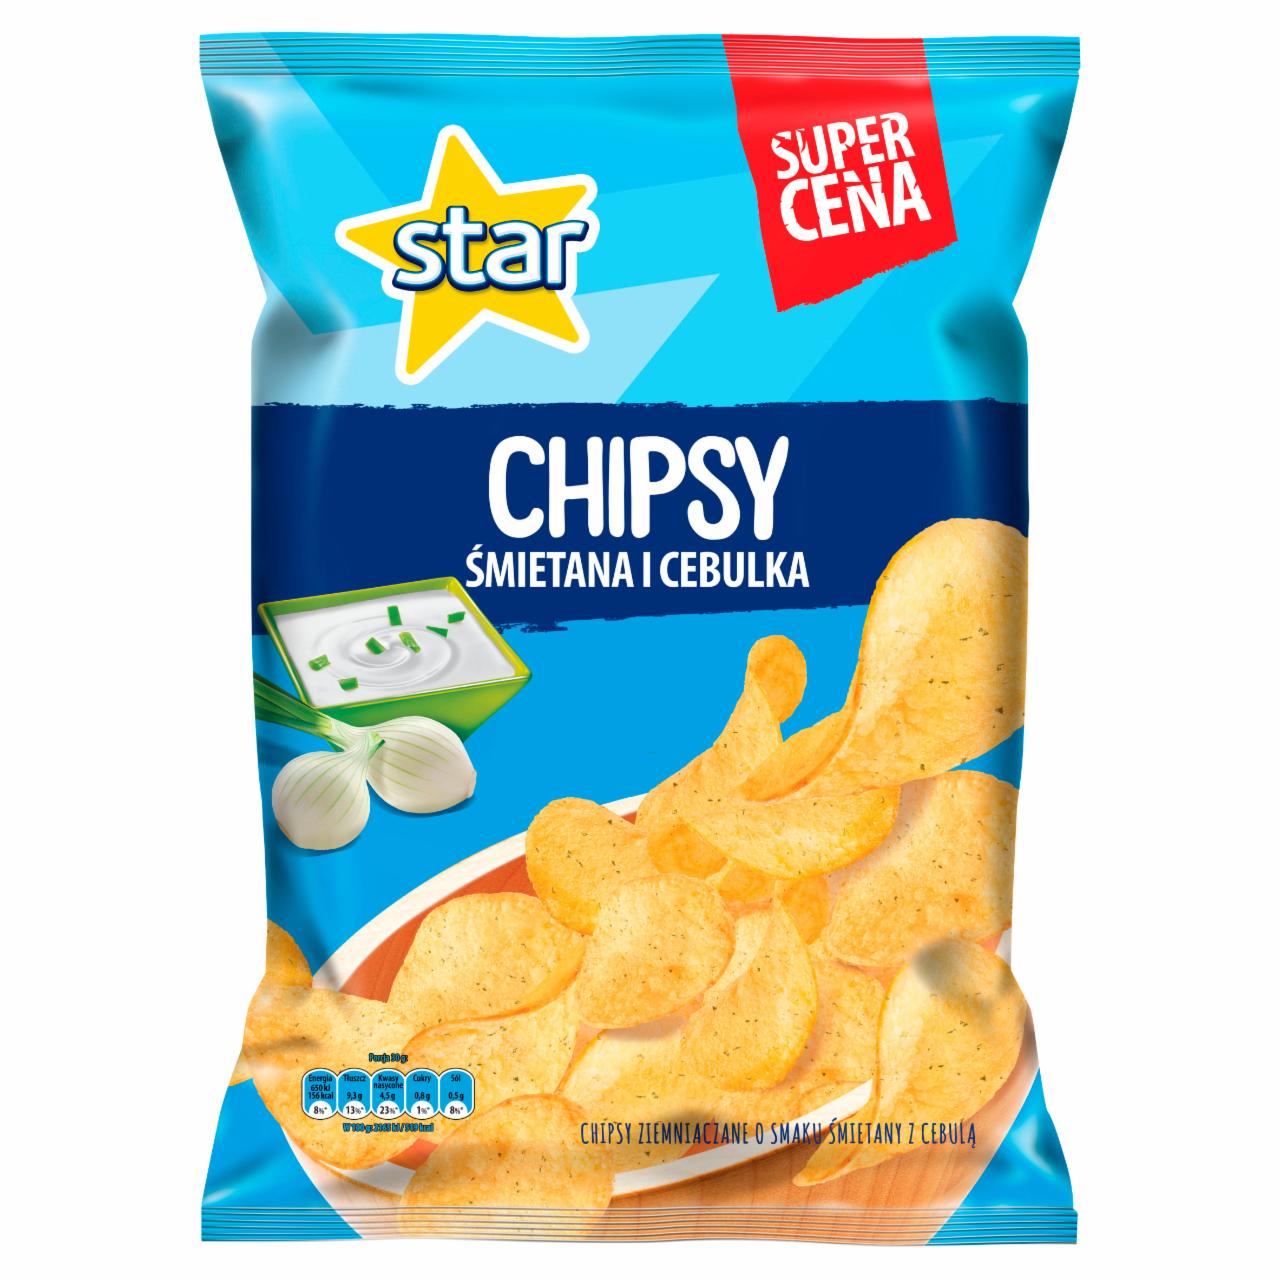 Zdjęcia - Star Chipsy o smaku śmietana i cebula 130 g